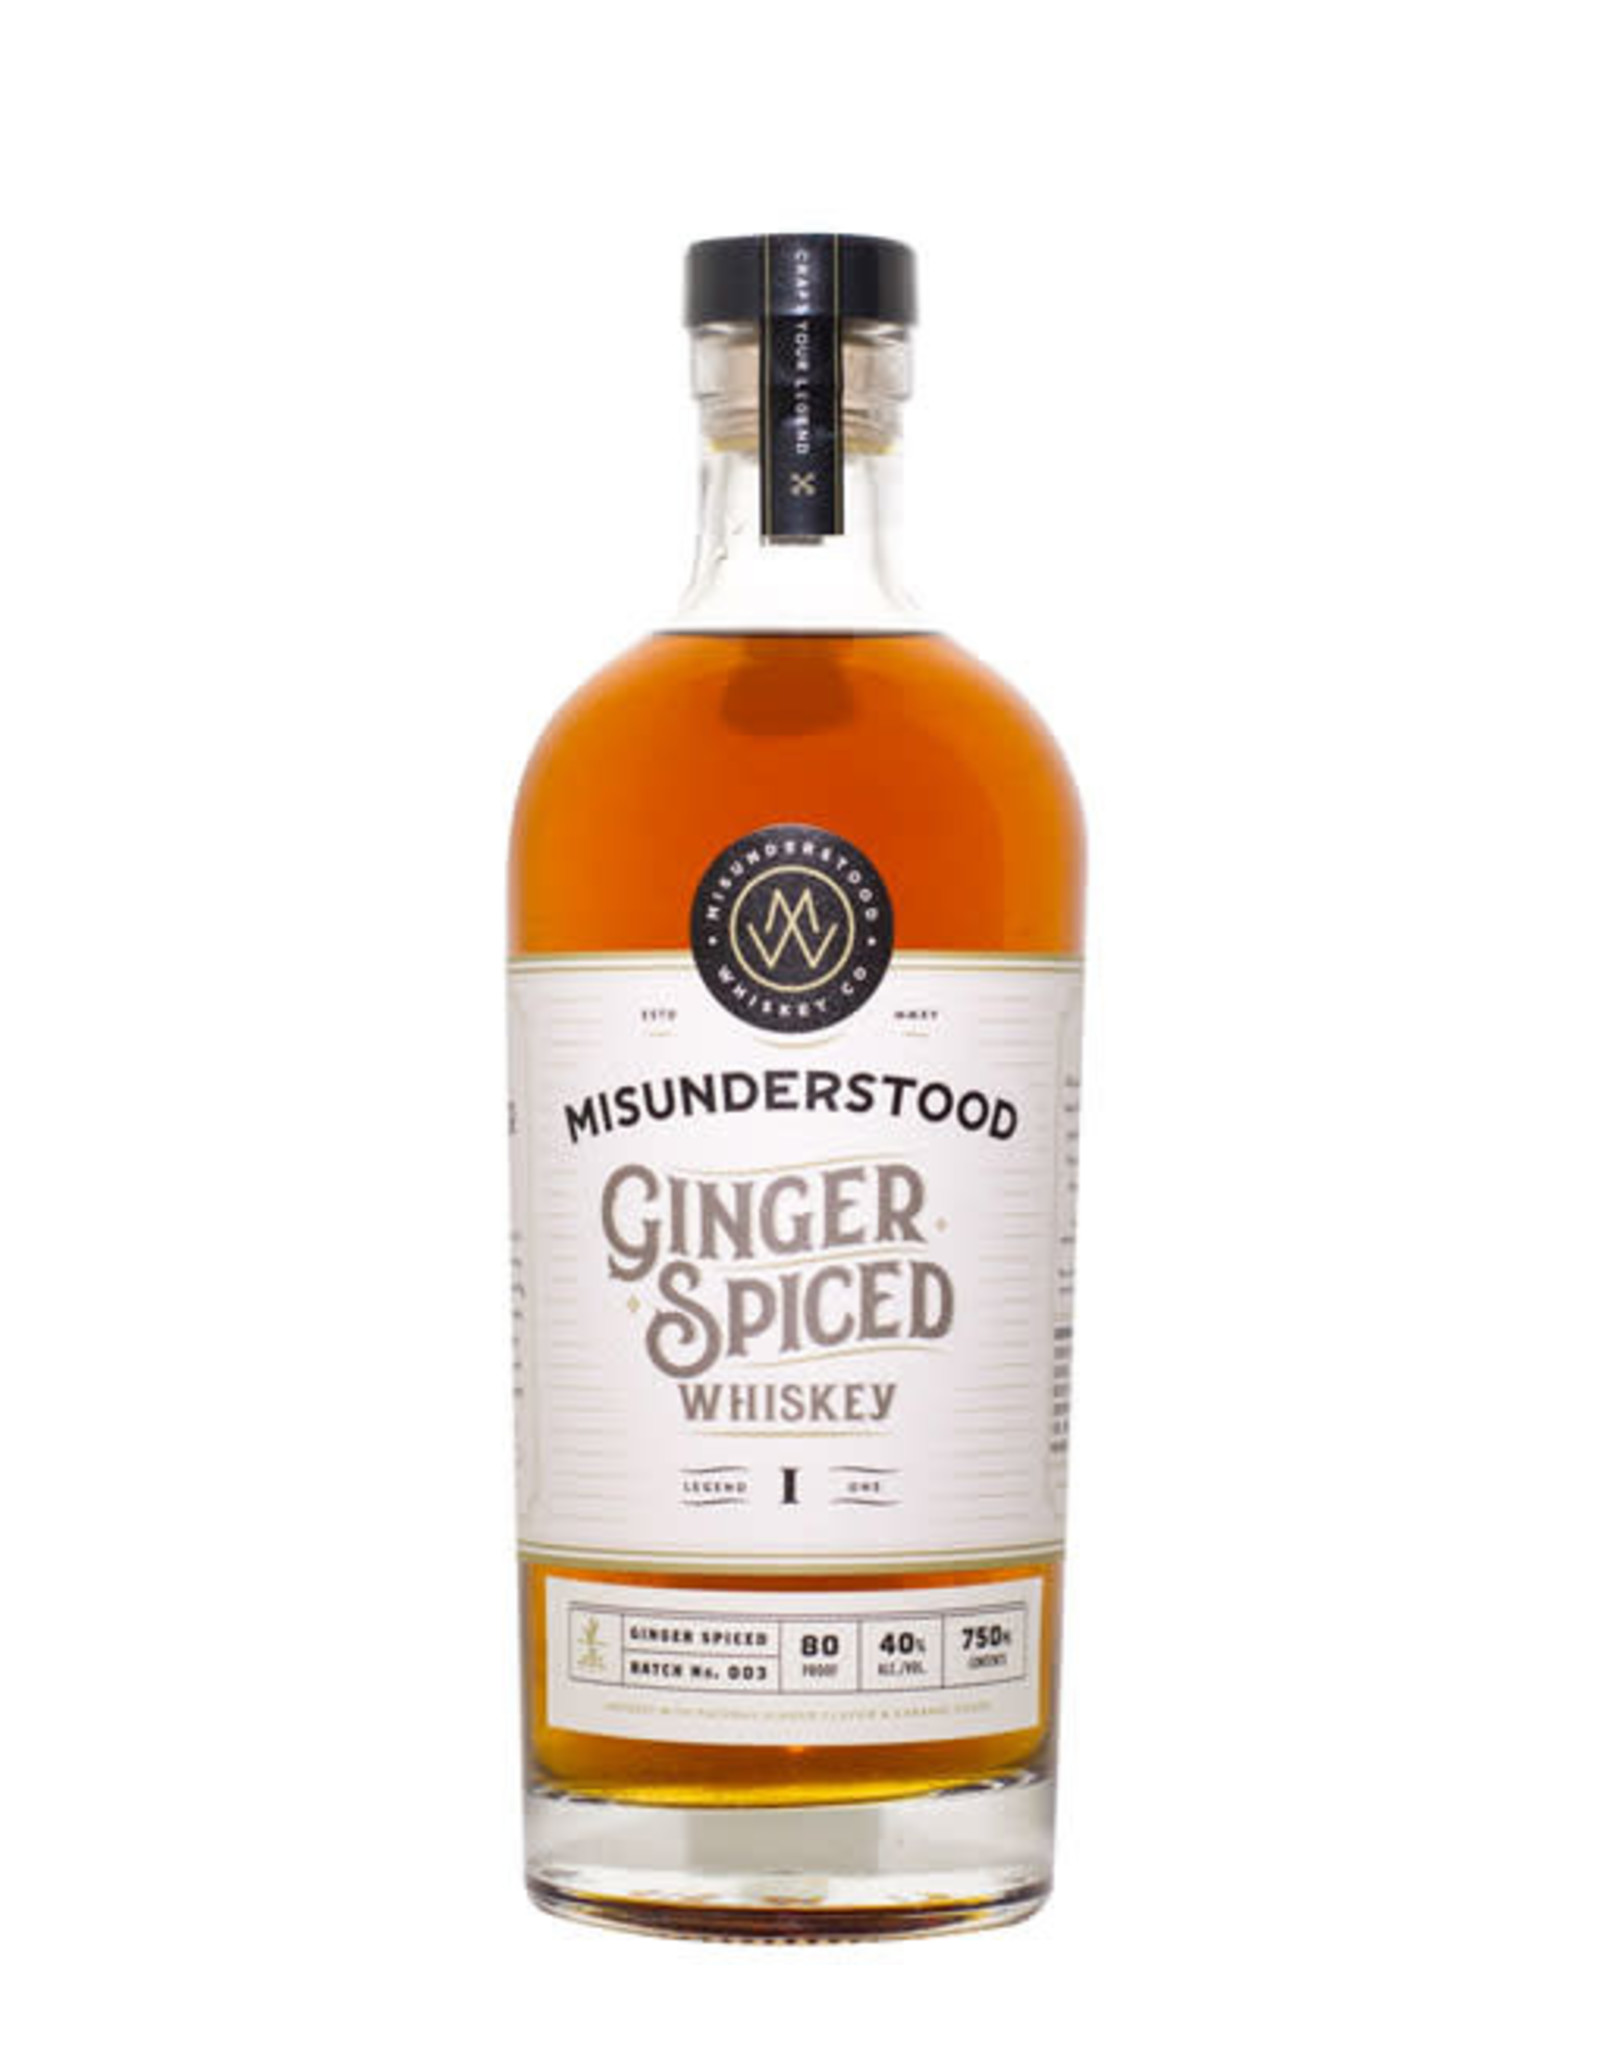 USA Misunderstood Ginger Spiced Whiskey